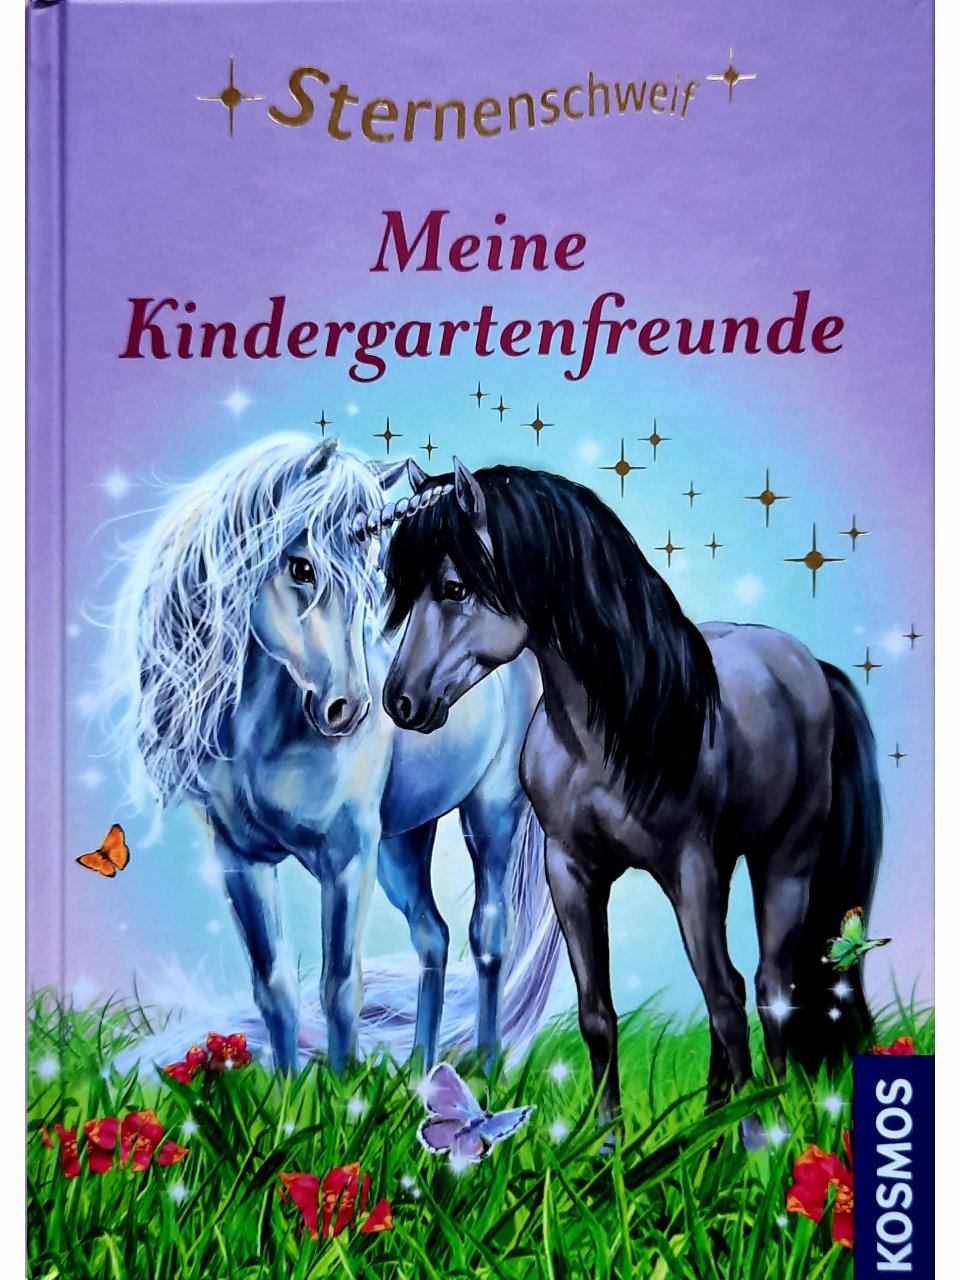 Sternenschweif - Meine Kindergartenfreunde